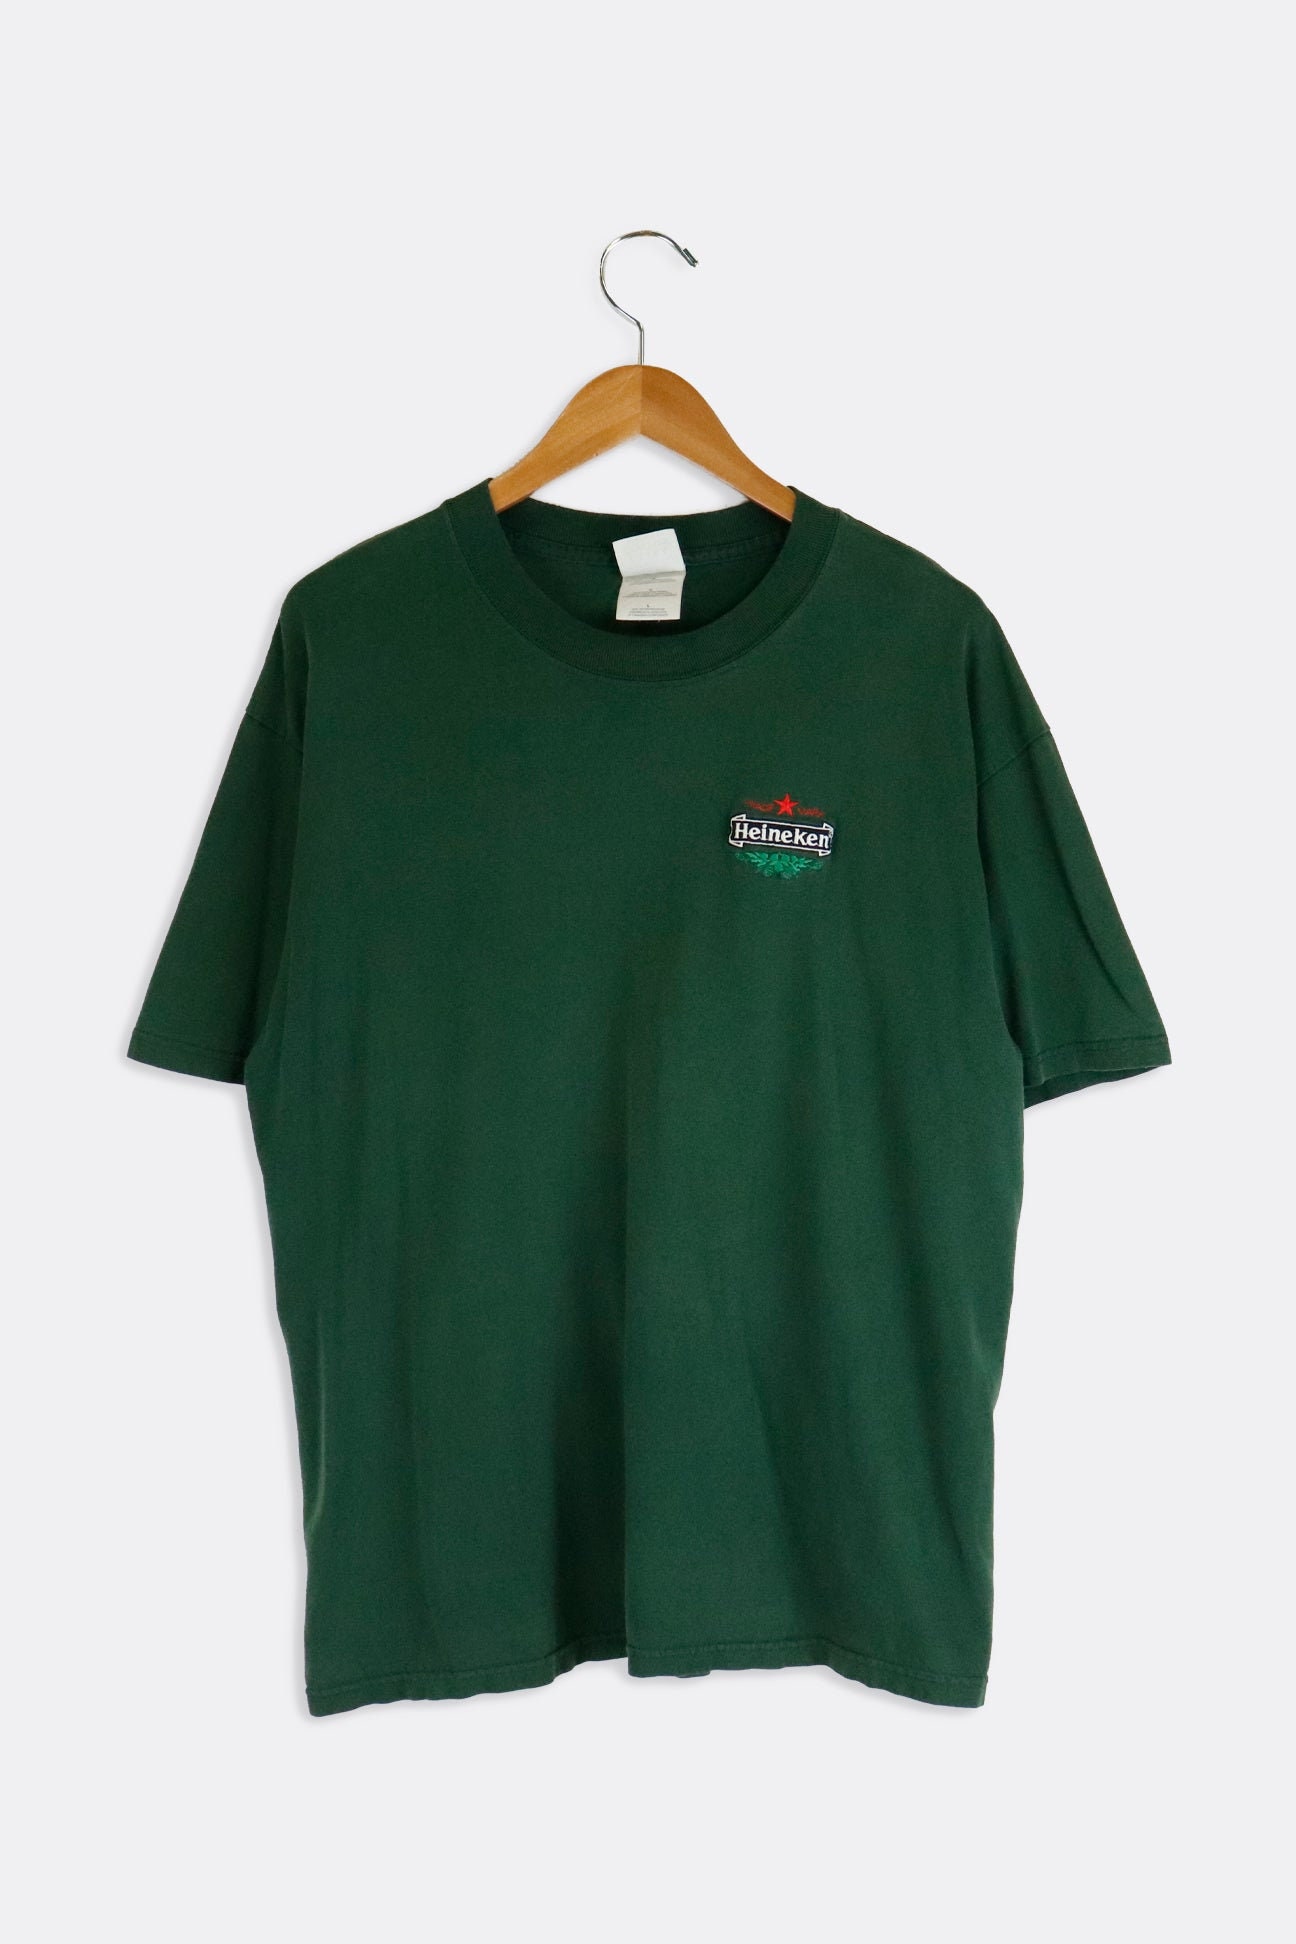 Vintage Heineken Embroidered T Shirt Etsy